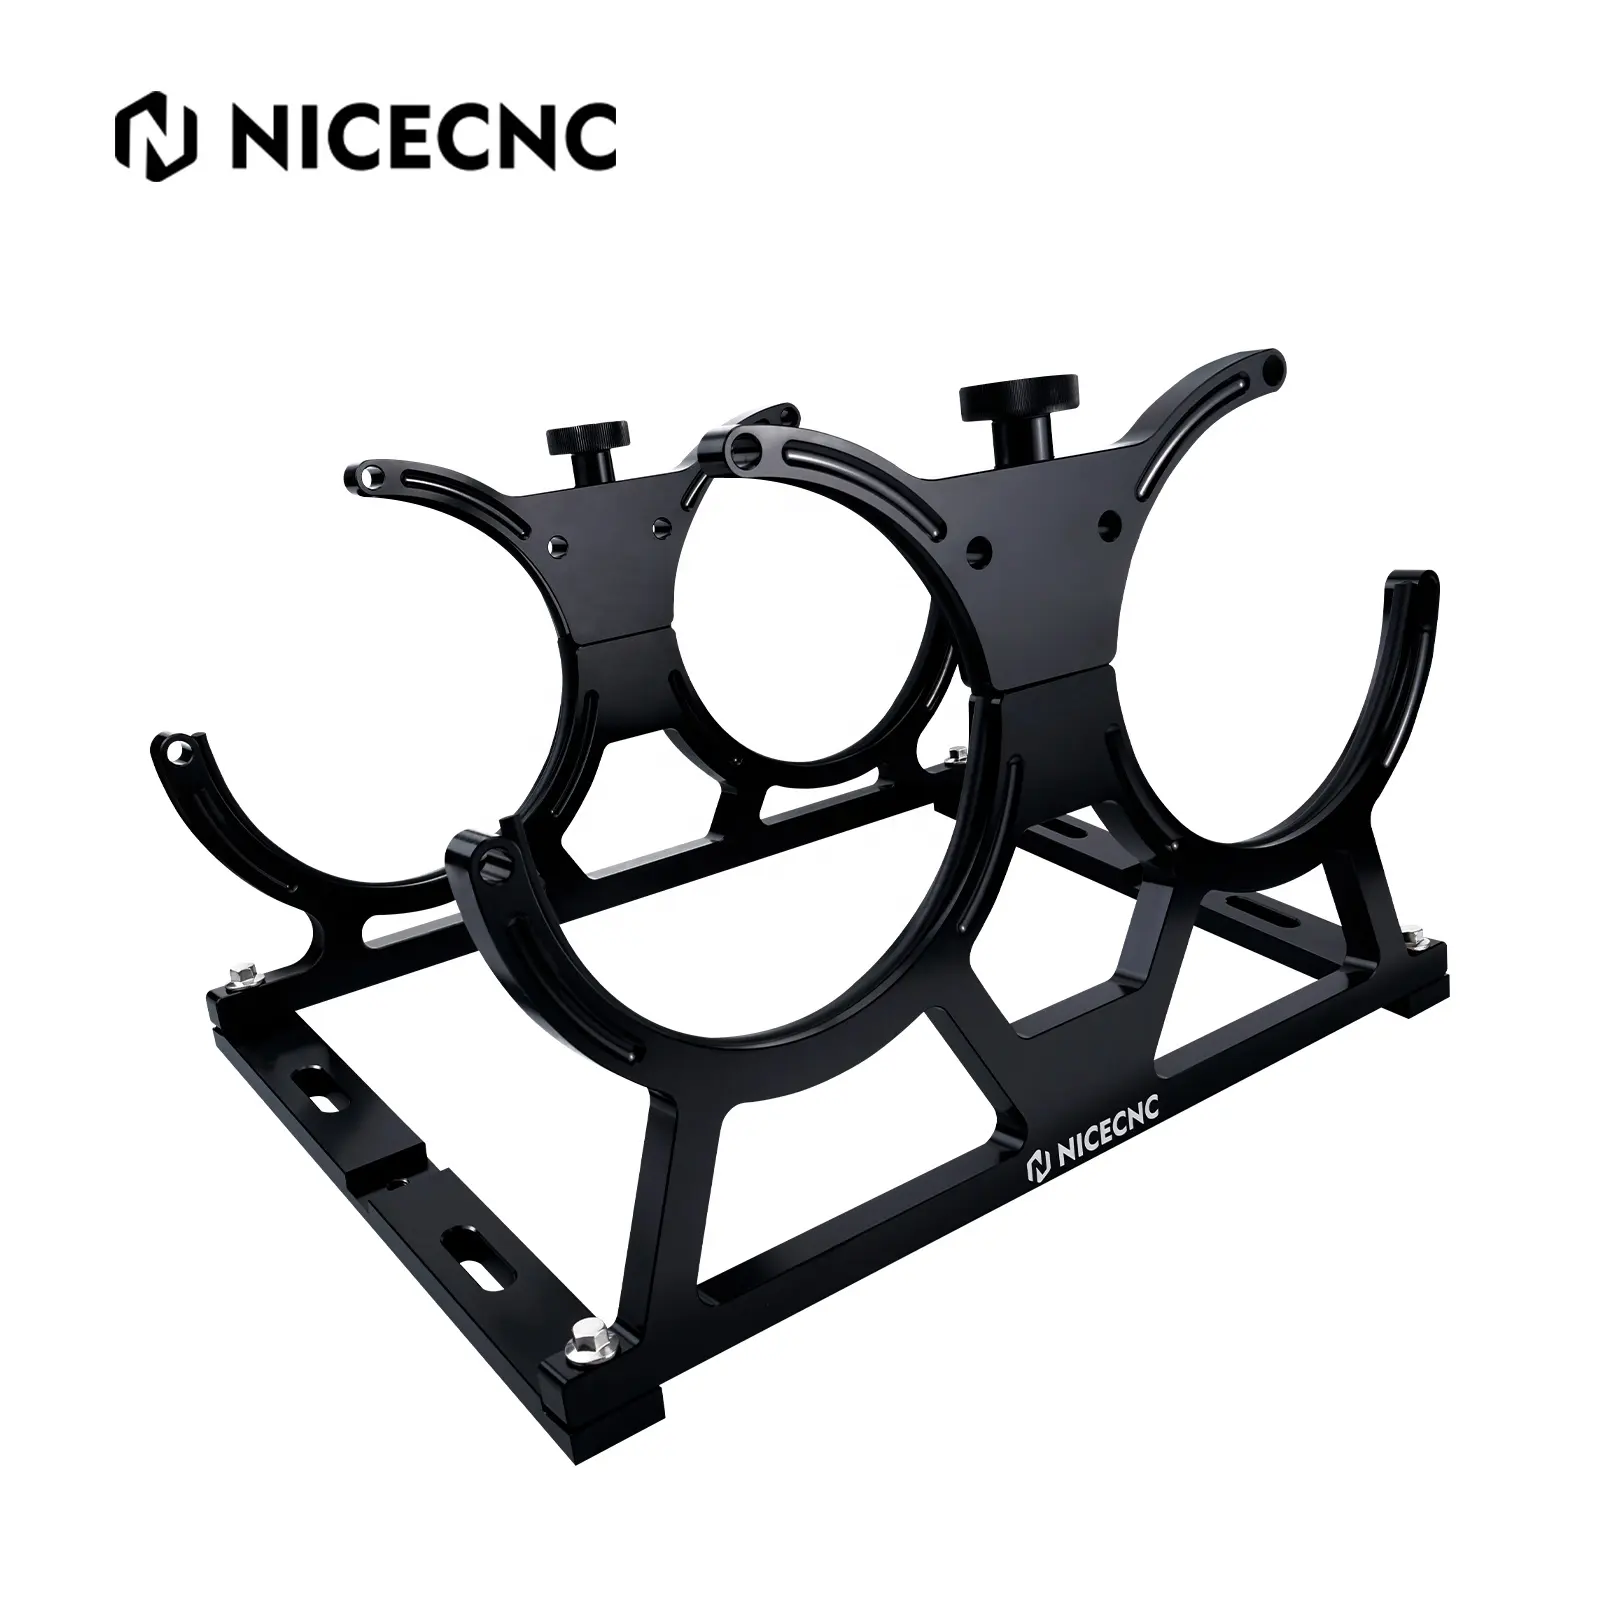 NiceCNC billette aluminium double 7 ''Kit de support de bouteille nitreuse pour les bouteilles nitreuses 10LB And15LB